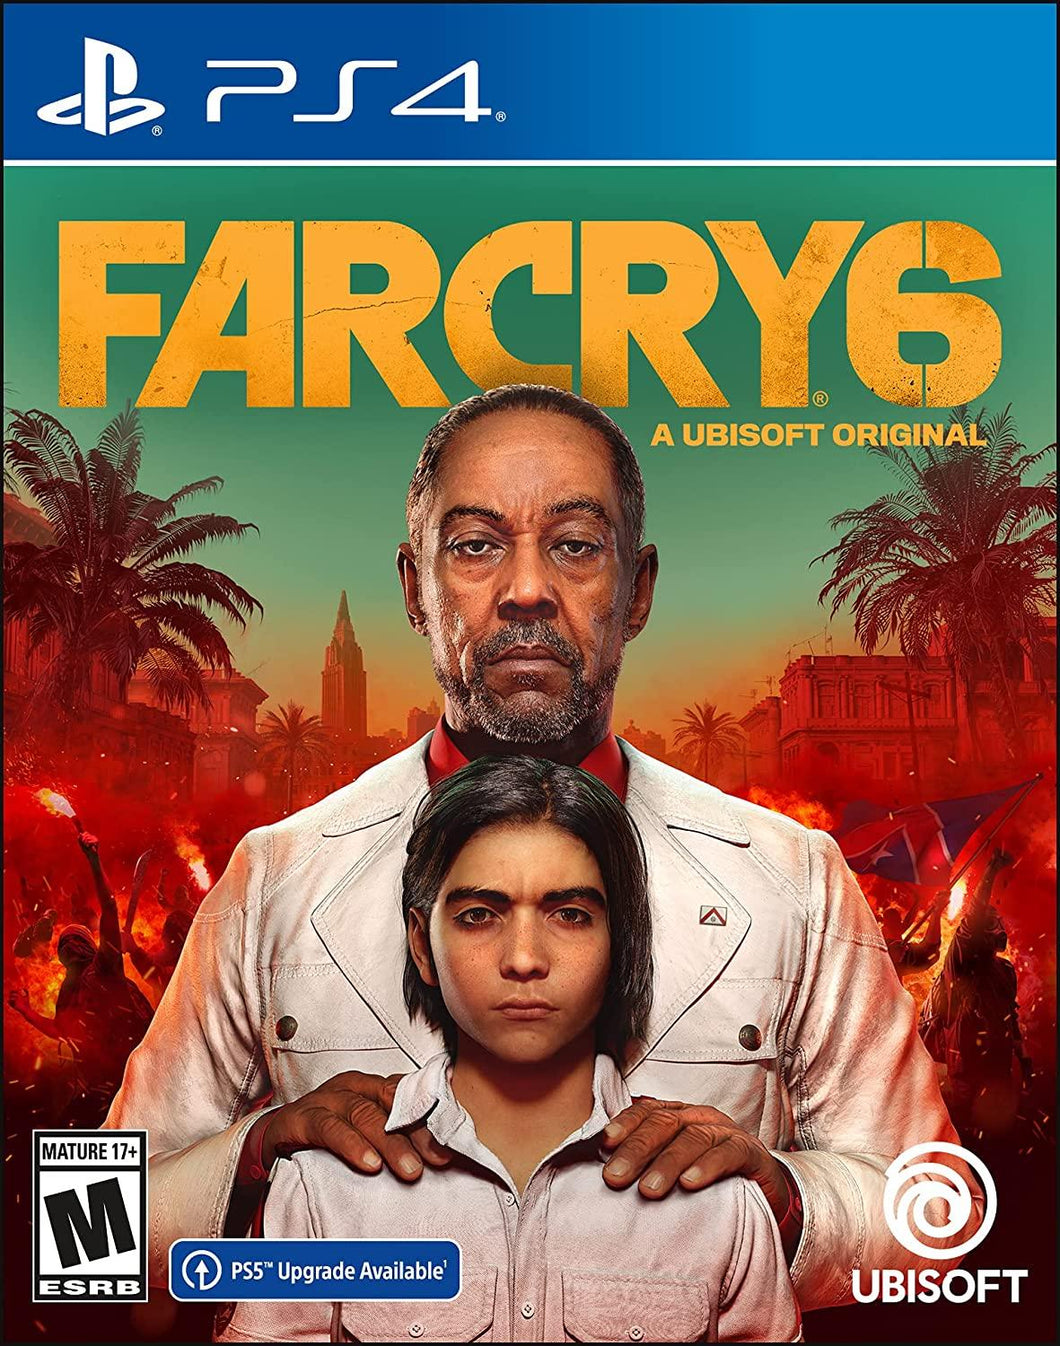 Far Cry 6 Playstation 4